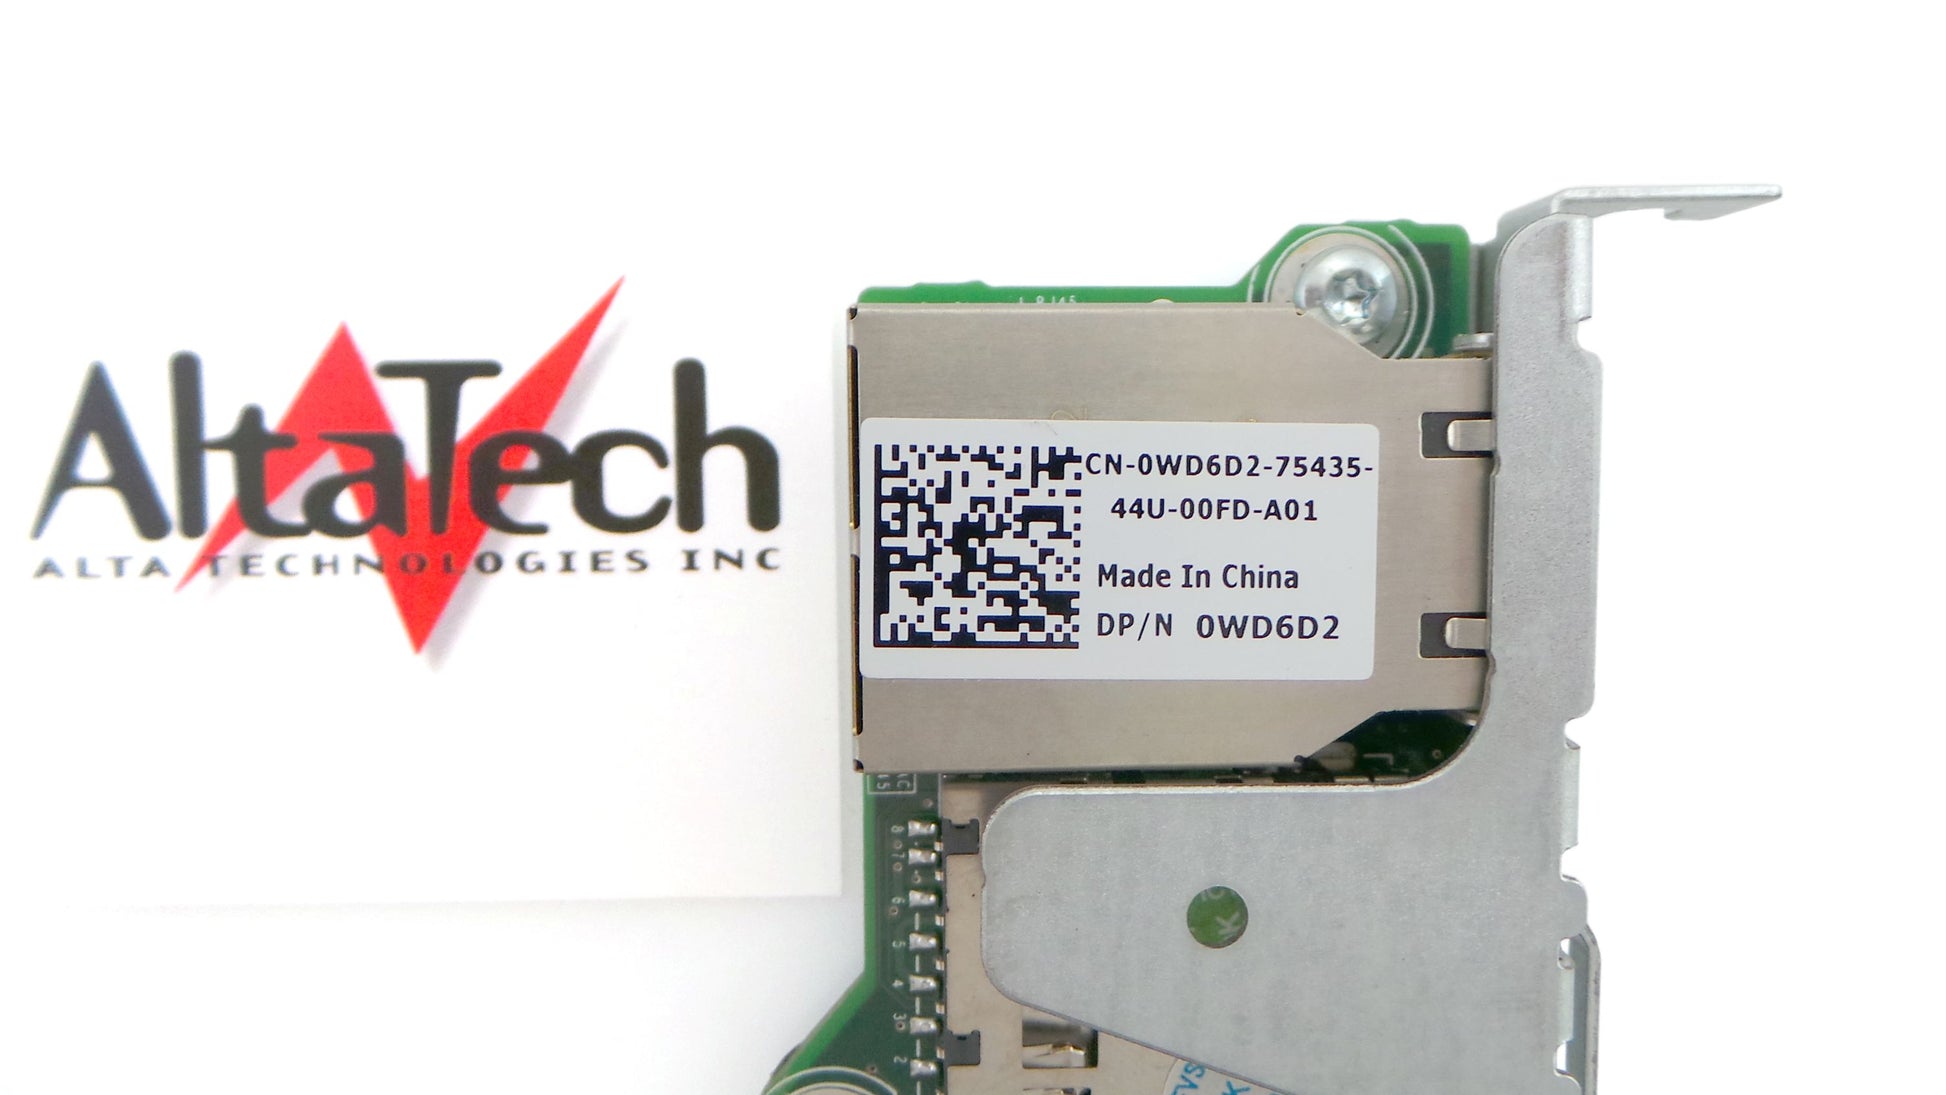 Dell 331-6956 R320/R420/R520 iDRAC7 Remote Access Card, Used